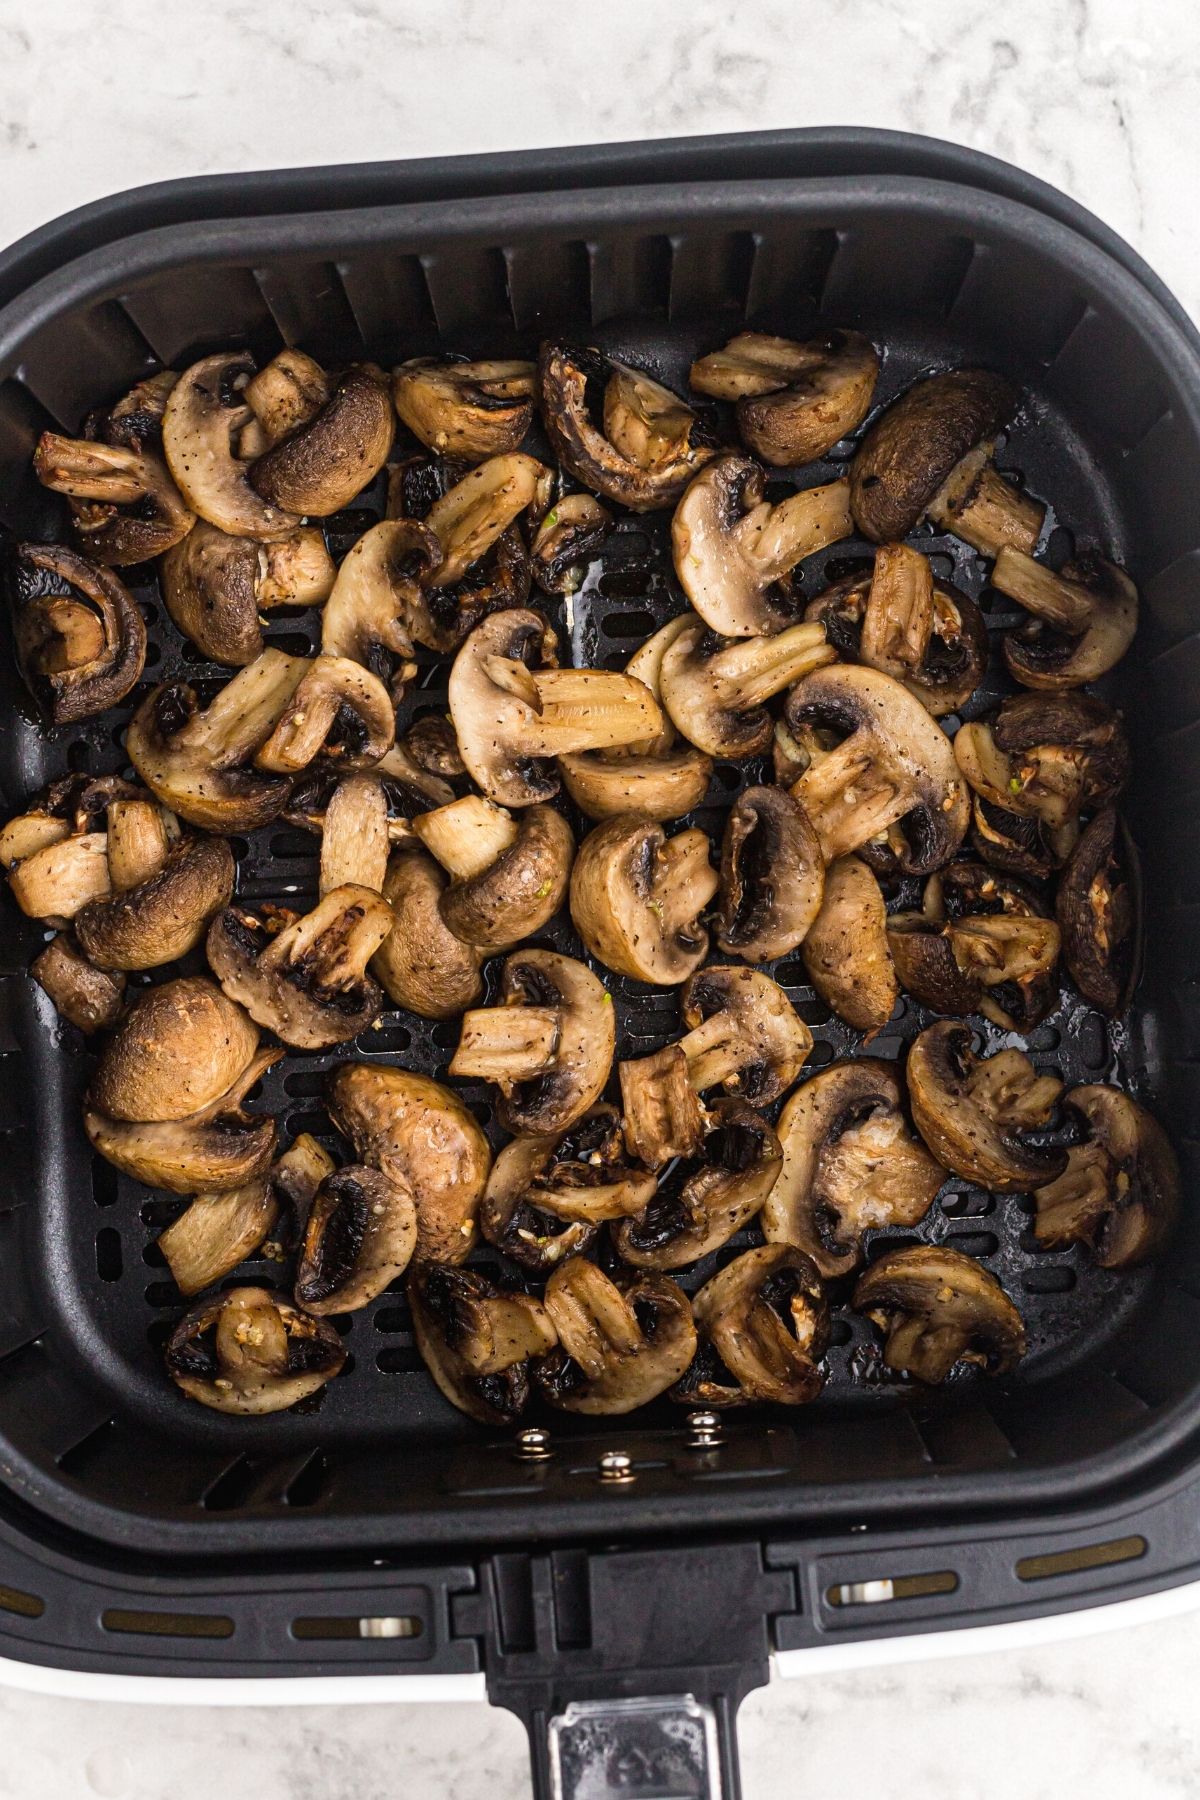 Juicy cooked mushrooms in the air fryer basket.